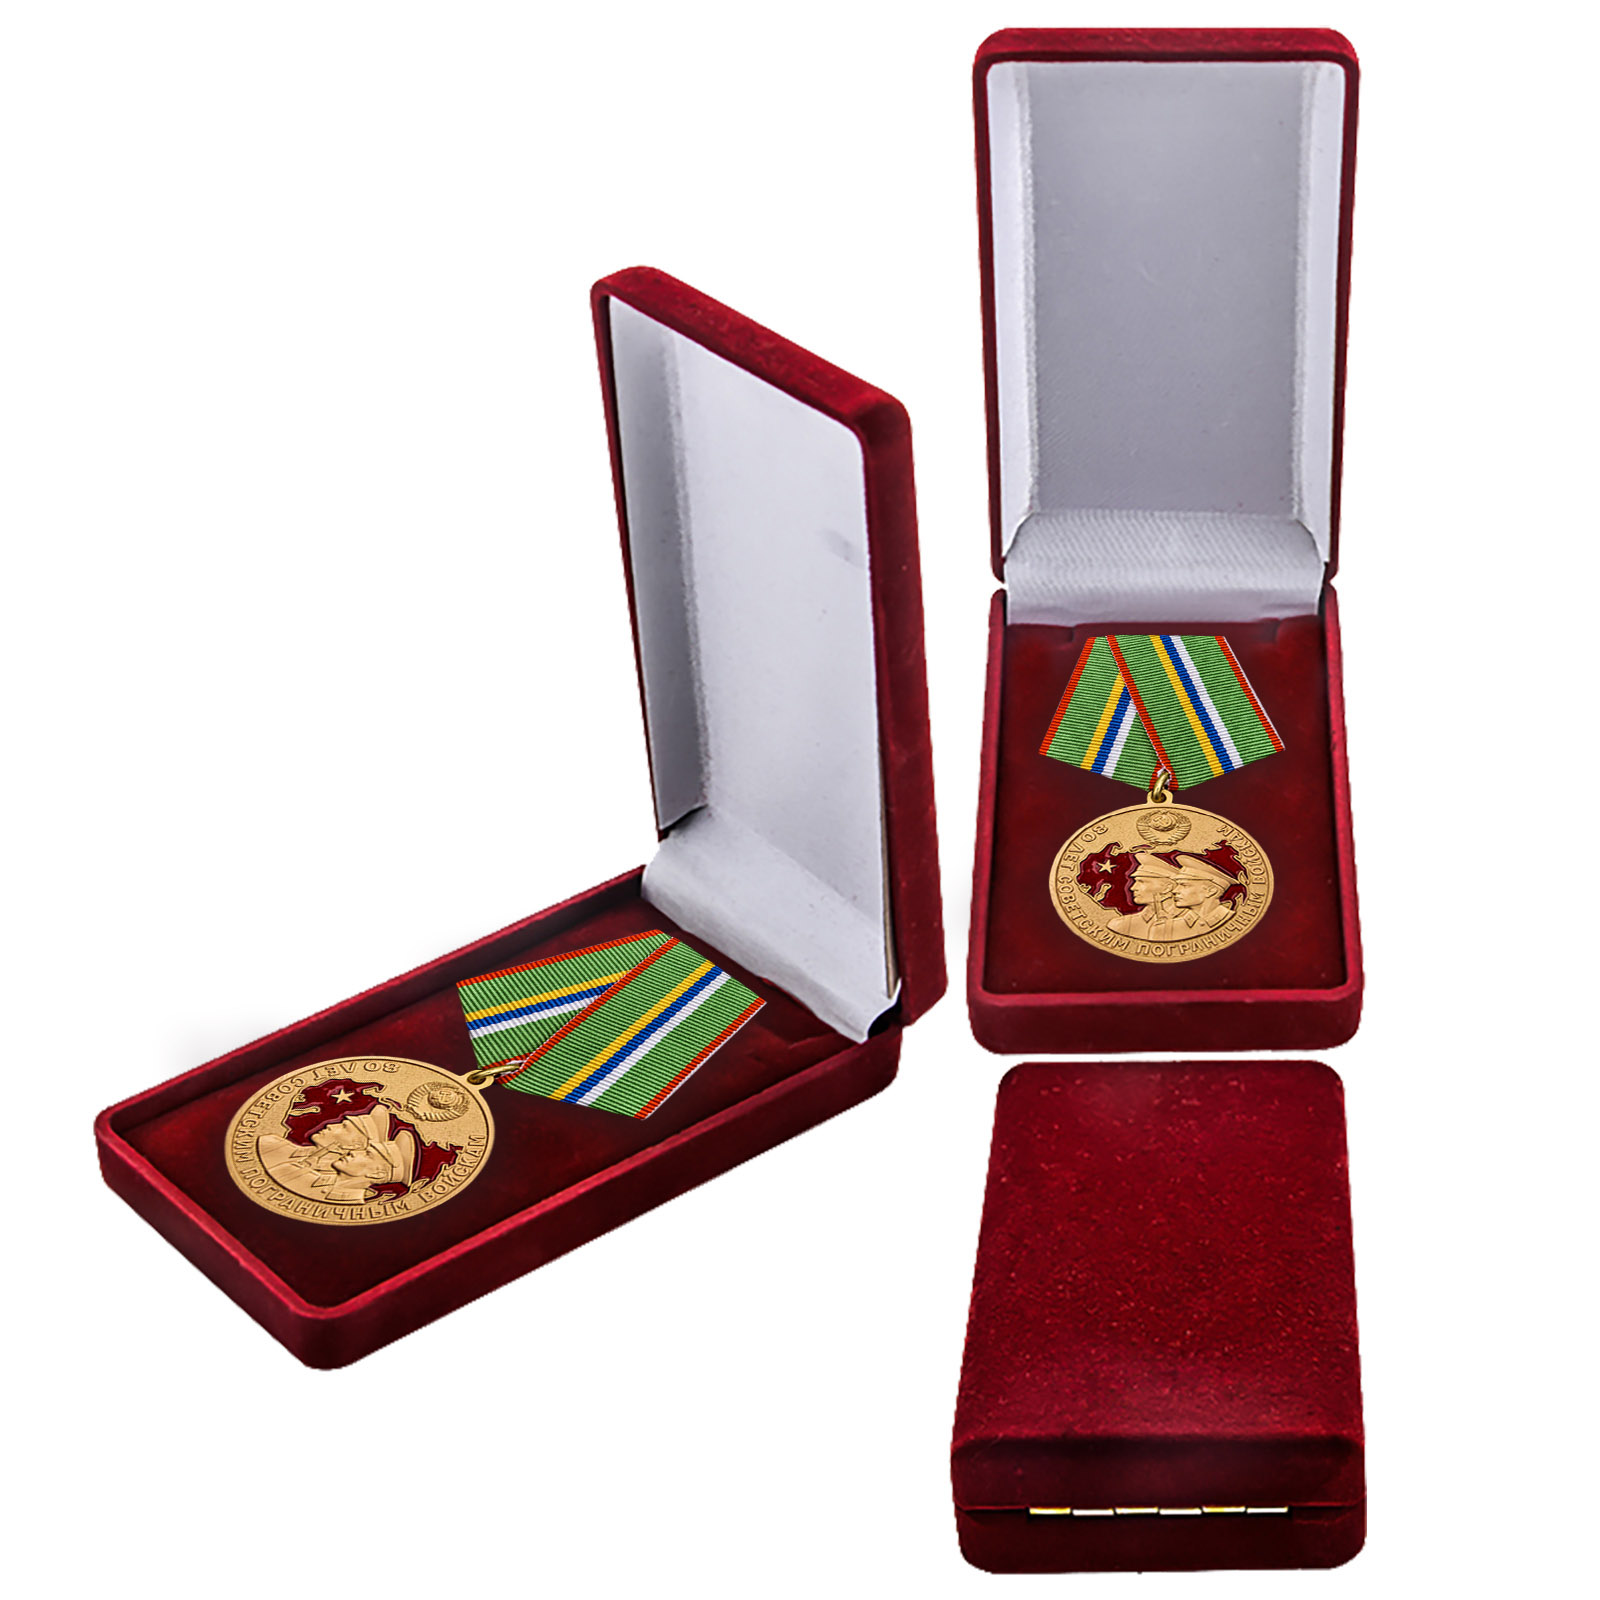 Купить латунную медаль 80 лет Пограничным войскам в подарок выгодно